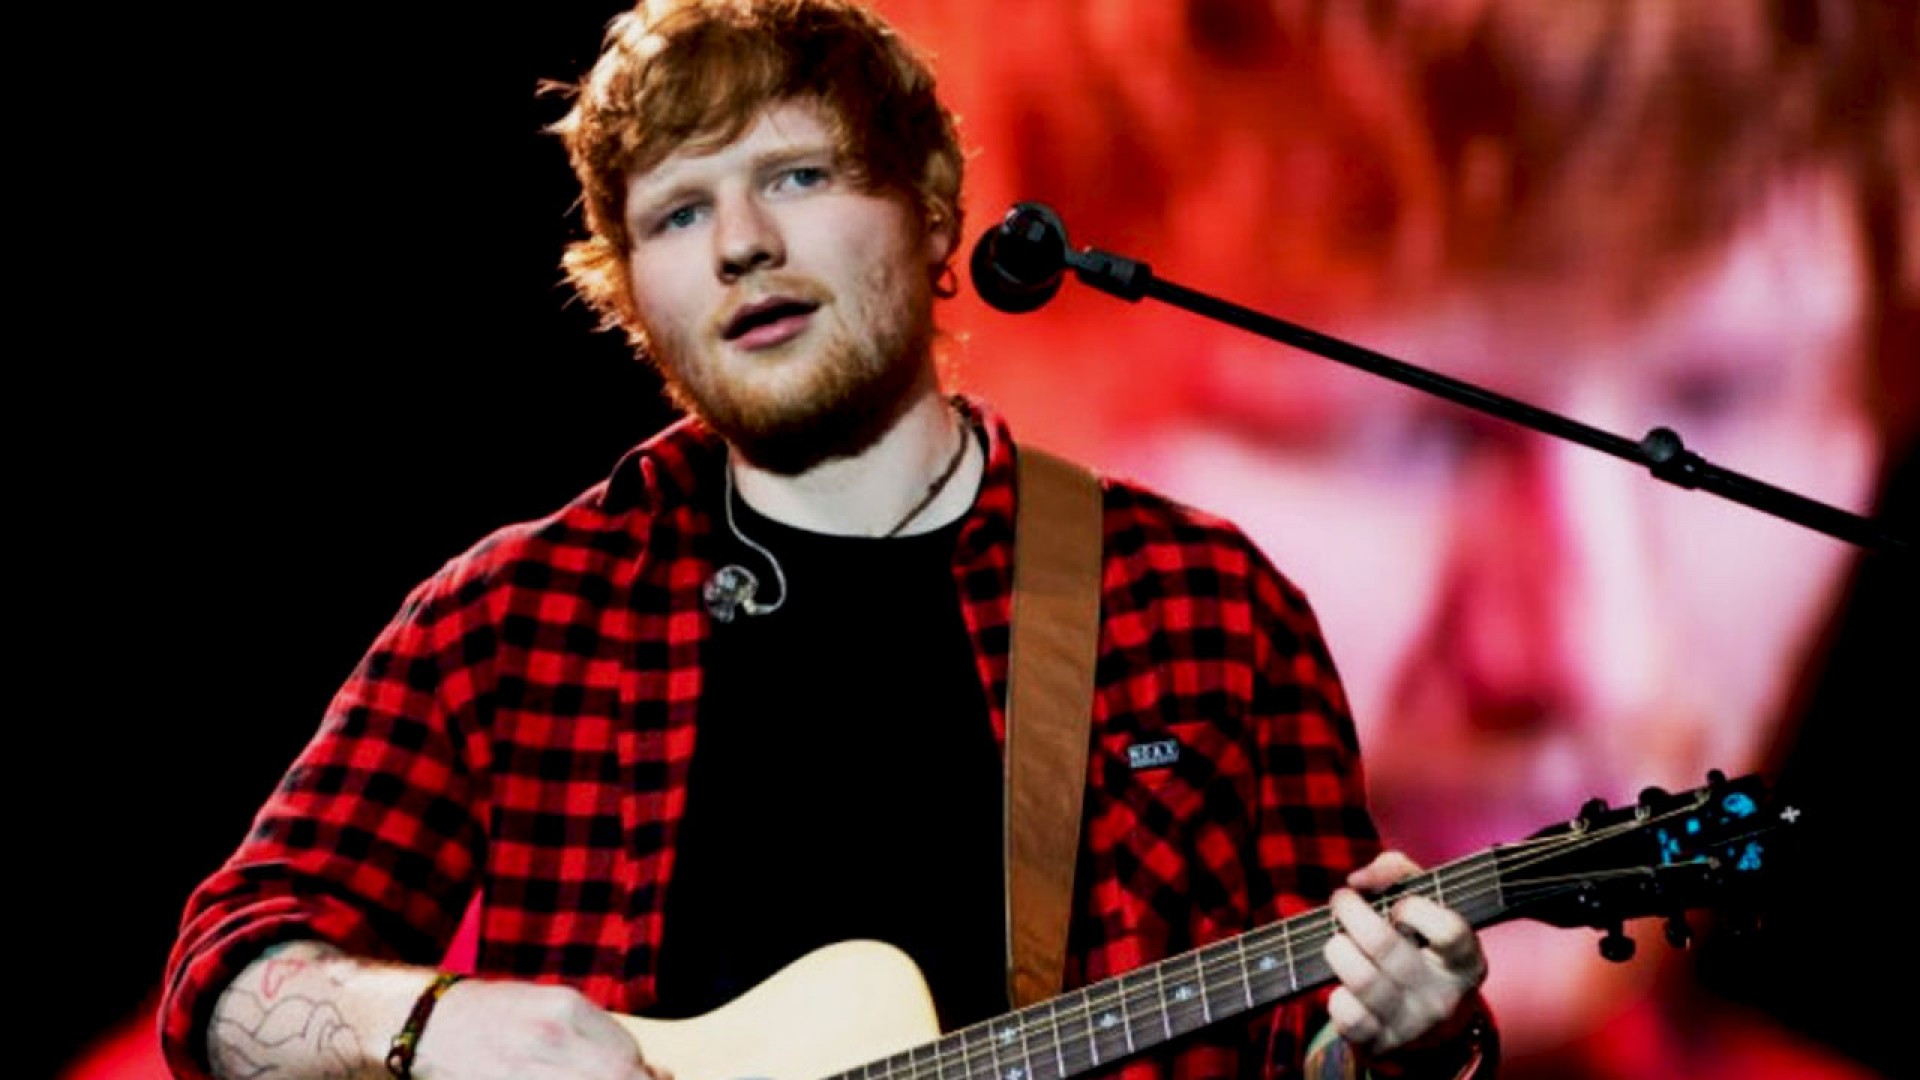 Khám phá phương pháp học tiếng Anh hiệu quả thông qua bài hát Shape of you – Ed Sheeran